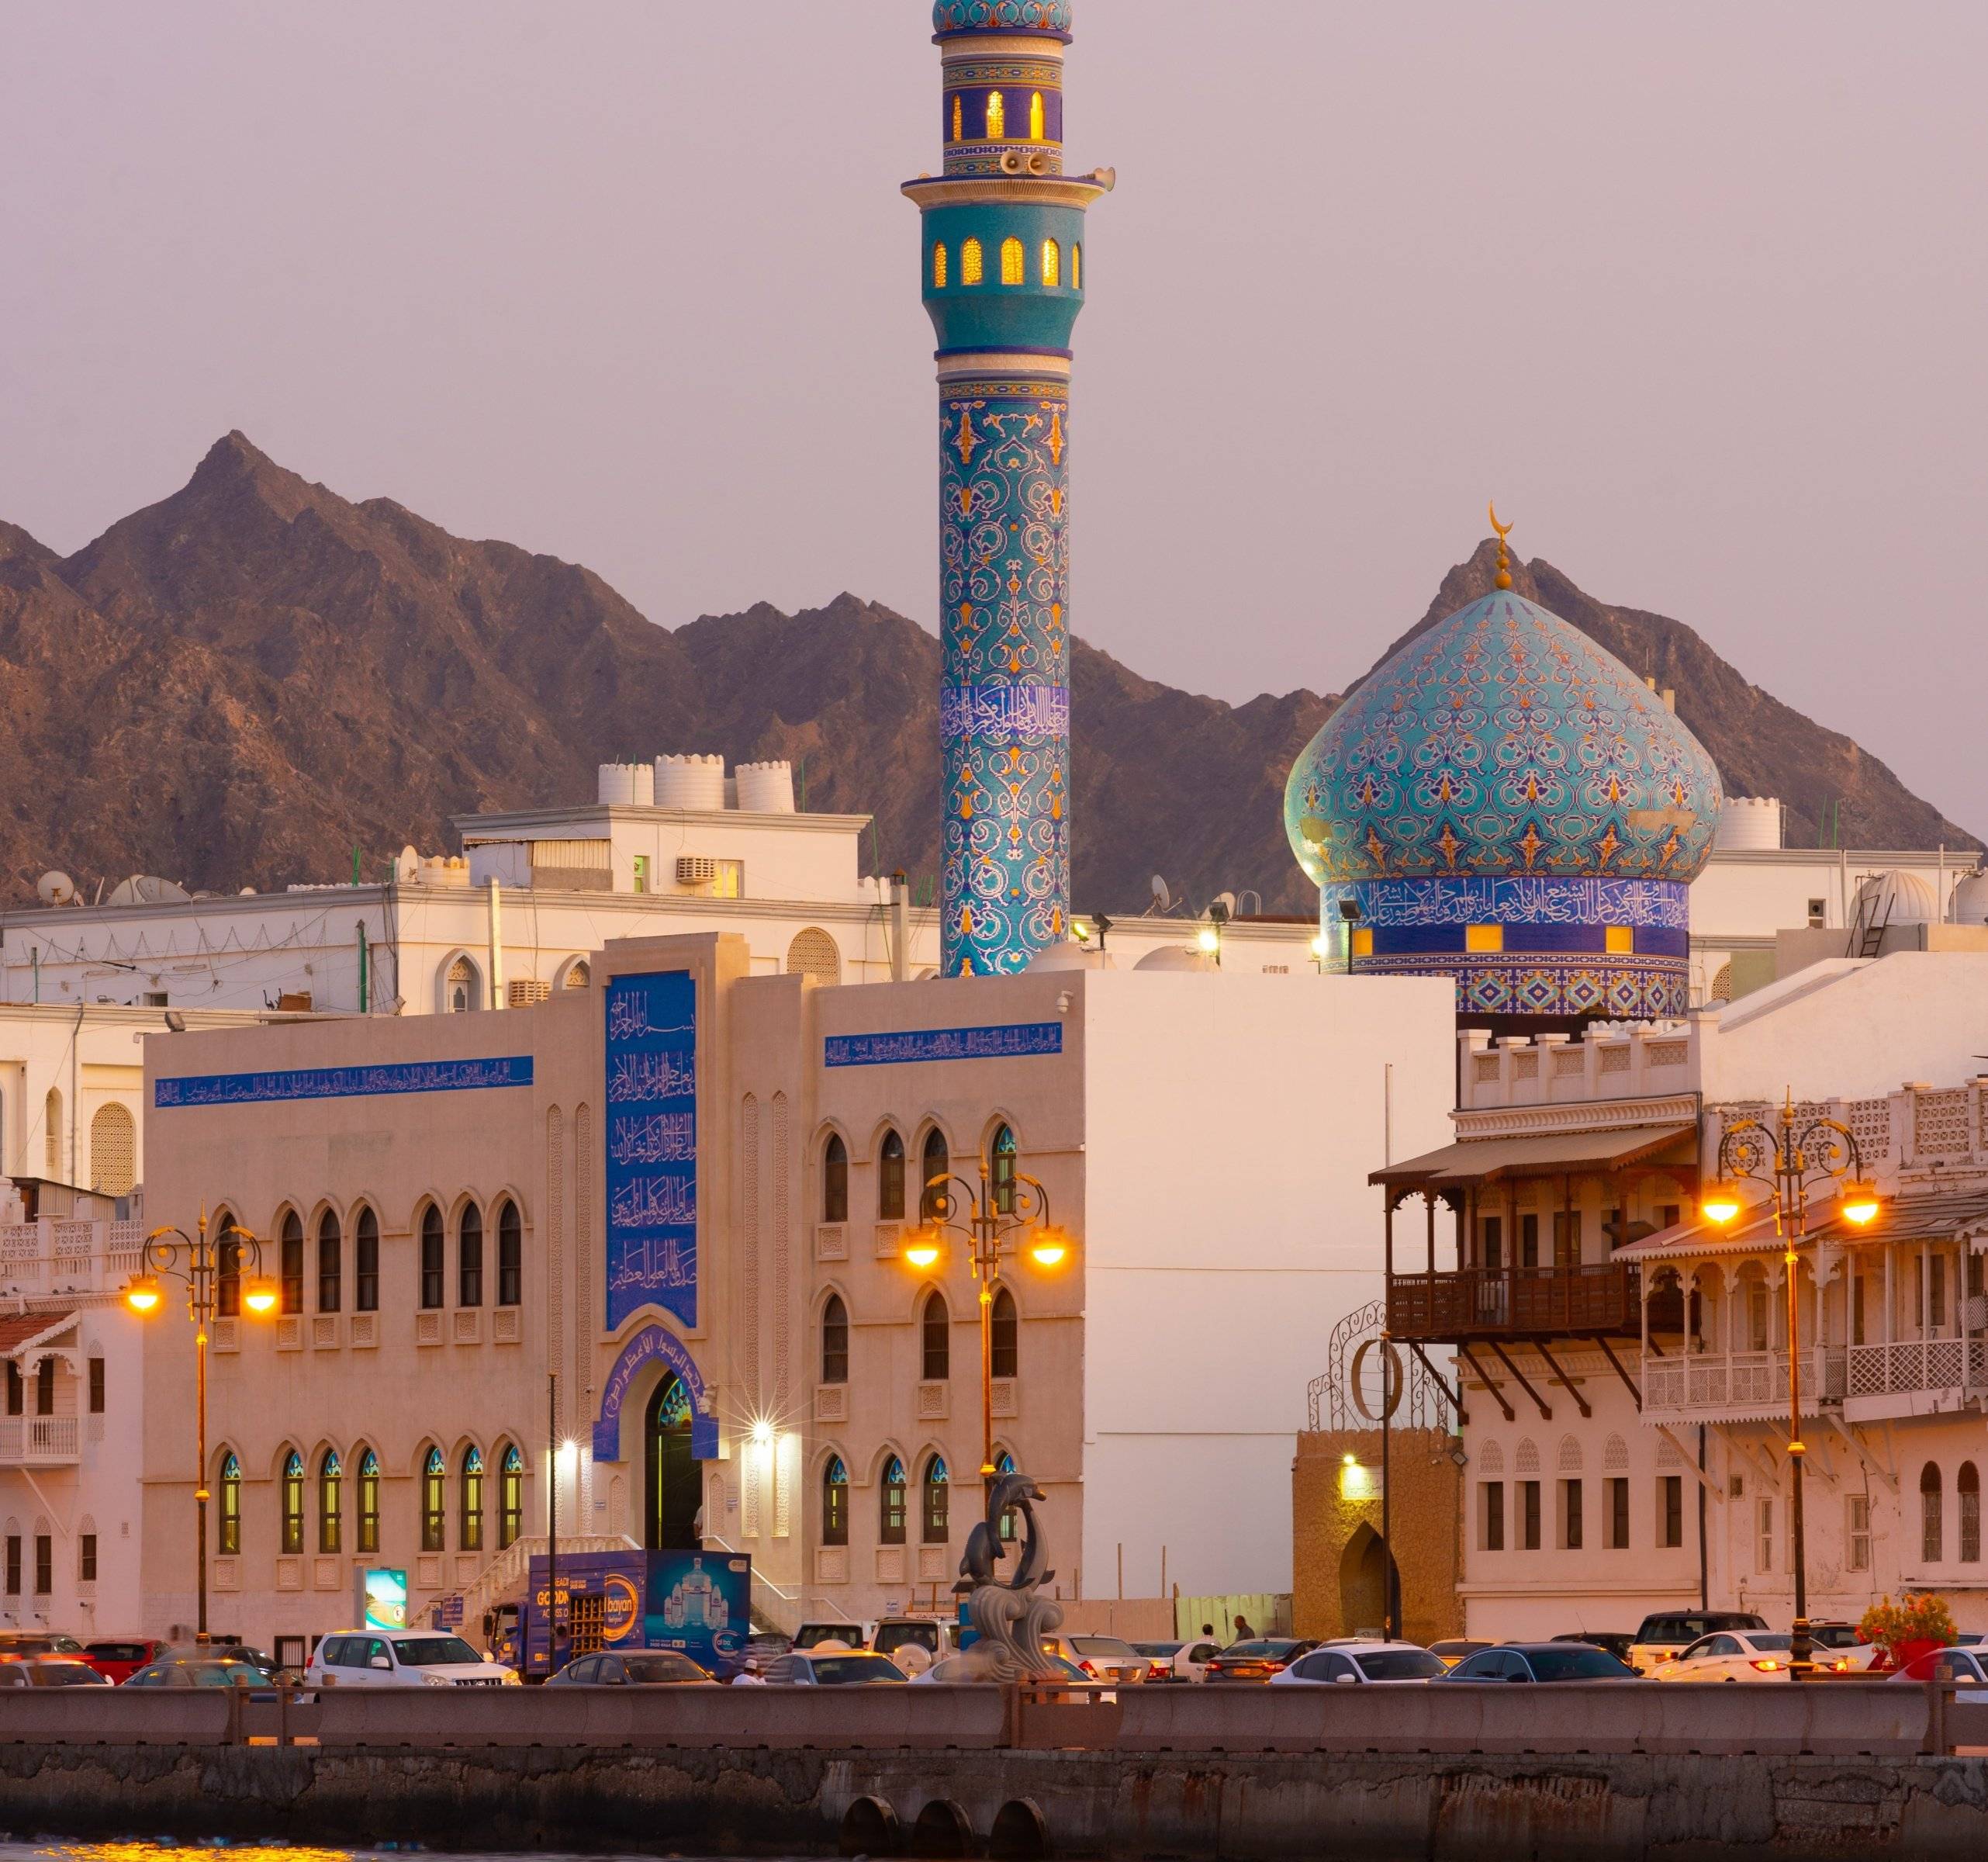 Benvenuti in Oman - Alla scoperta della bellezza di Muscat